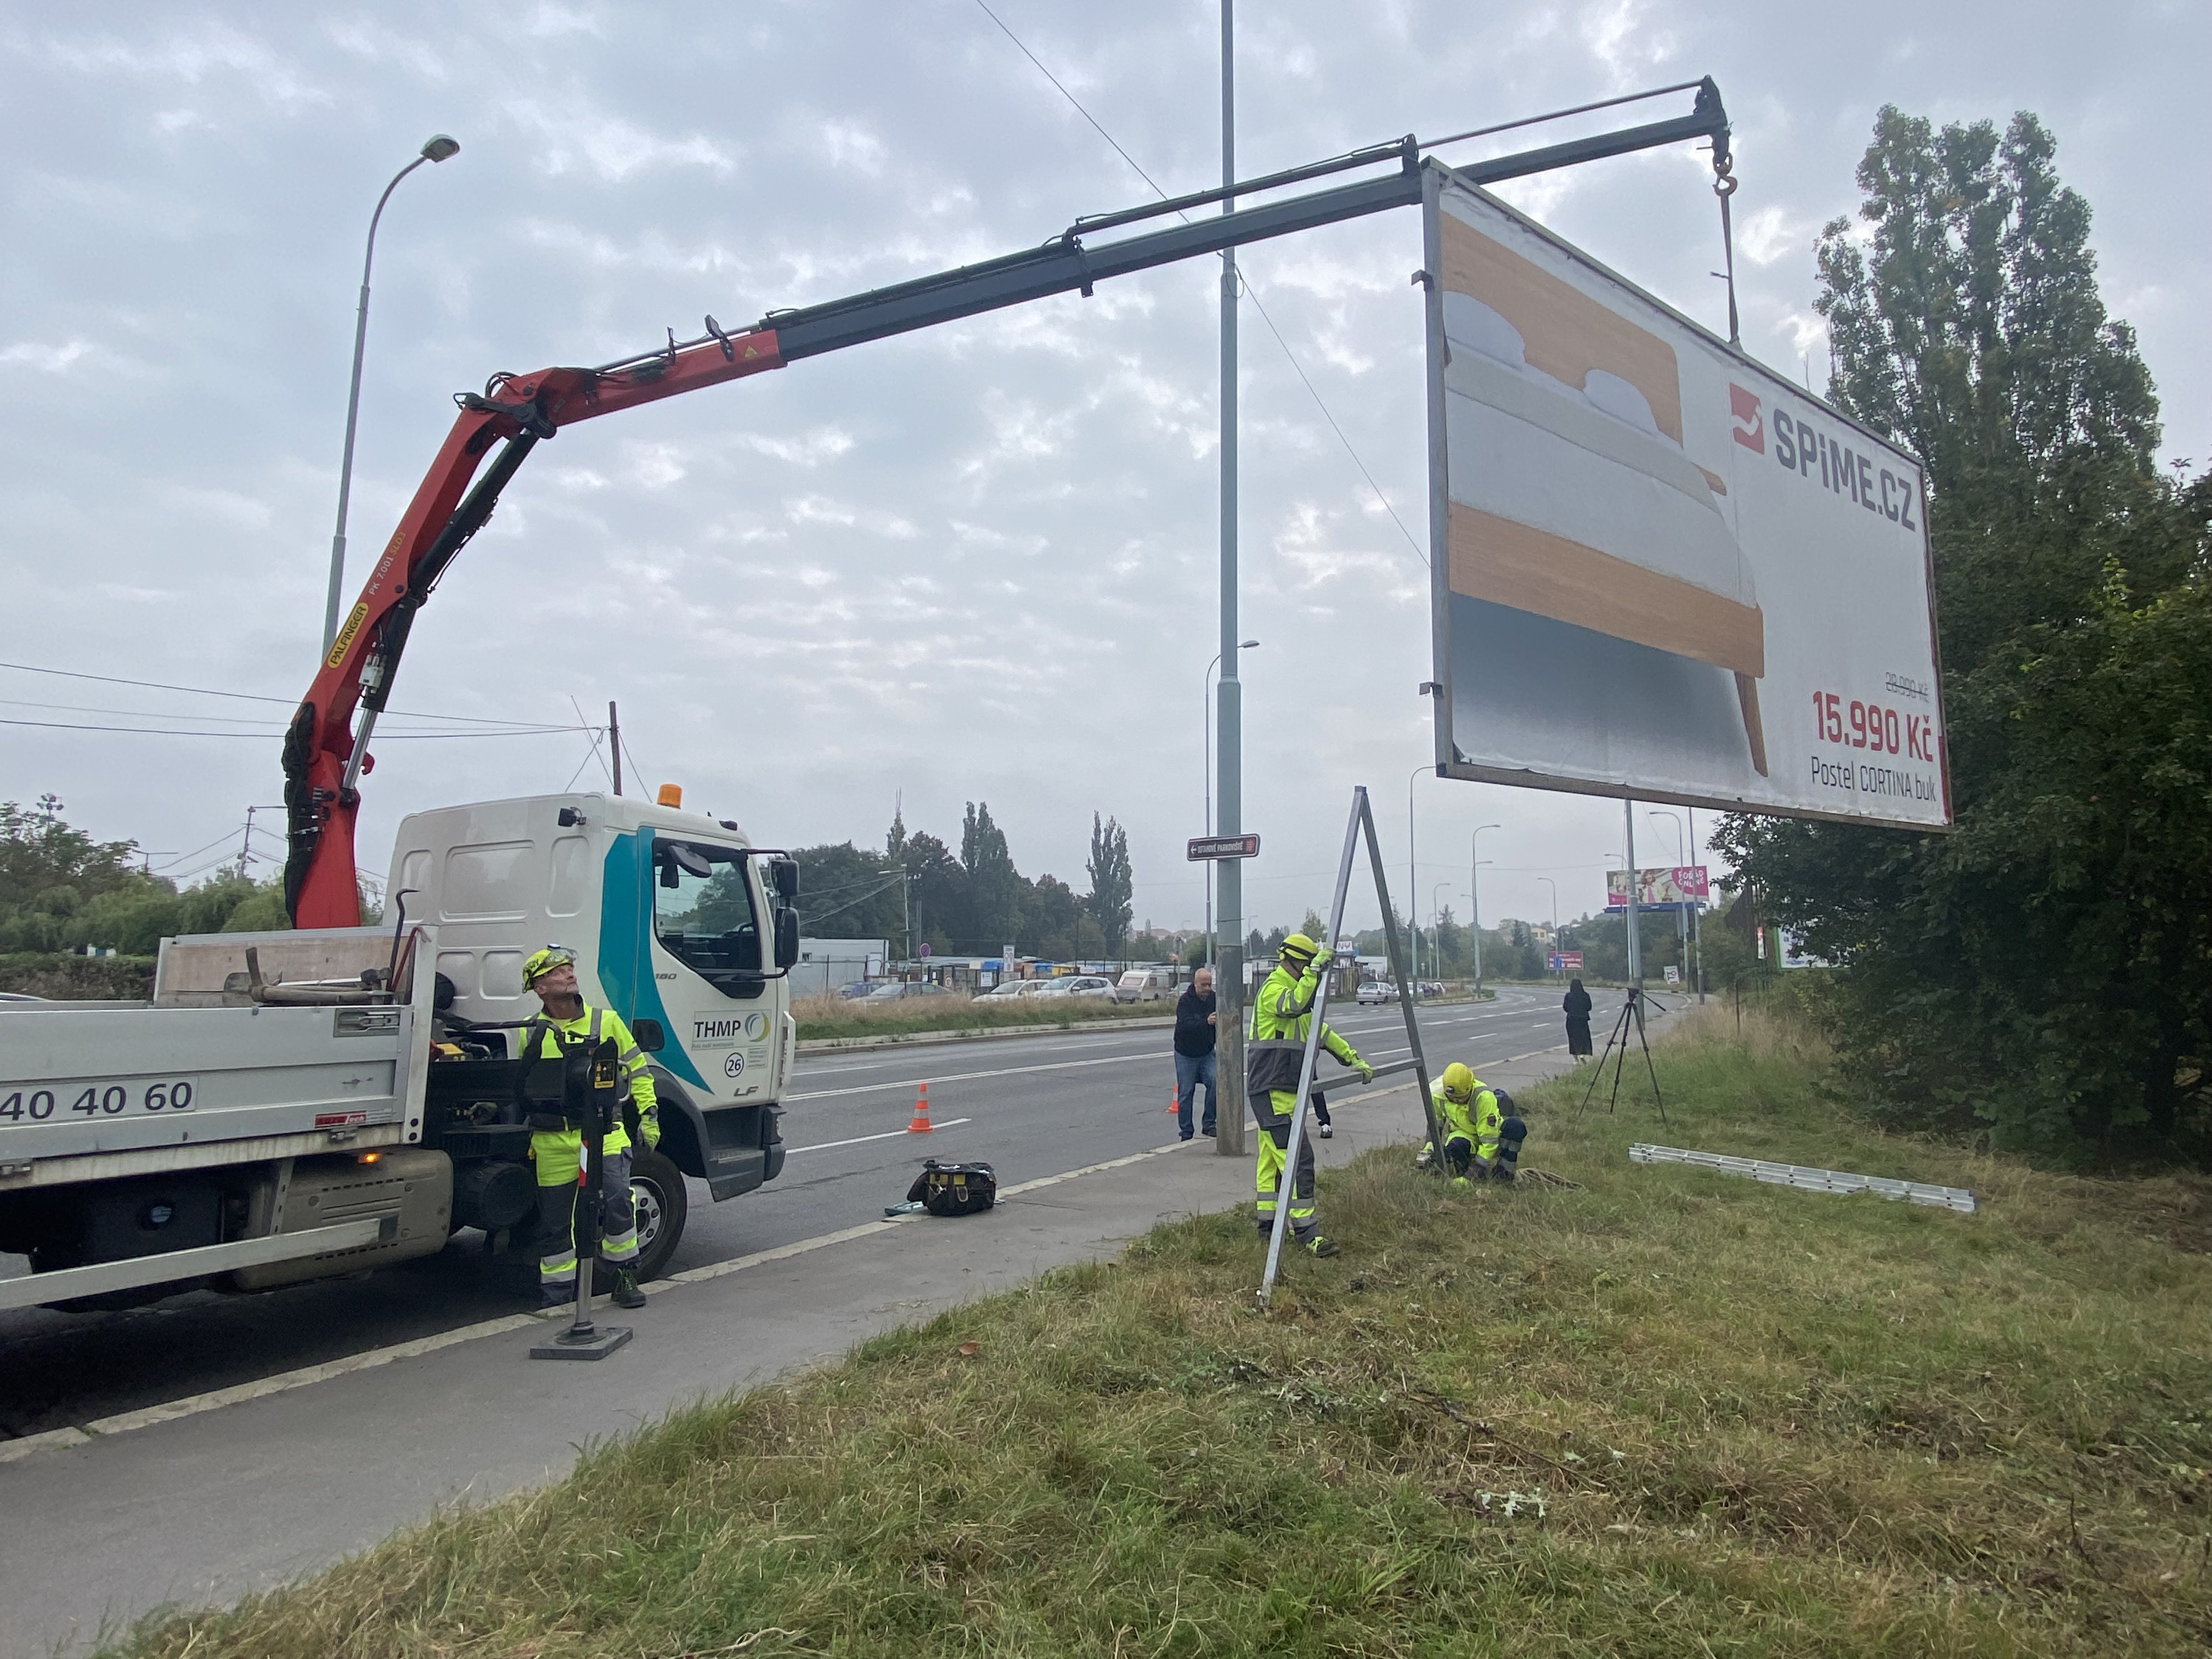 Odstraňování nelegálních billboardů v ulici Radlická